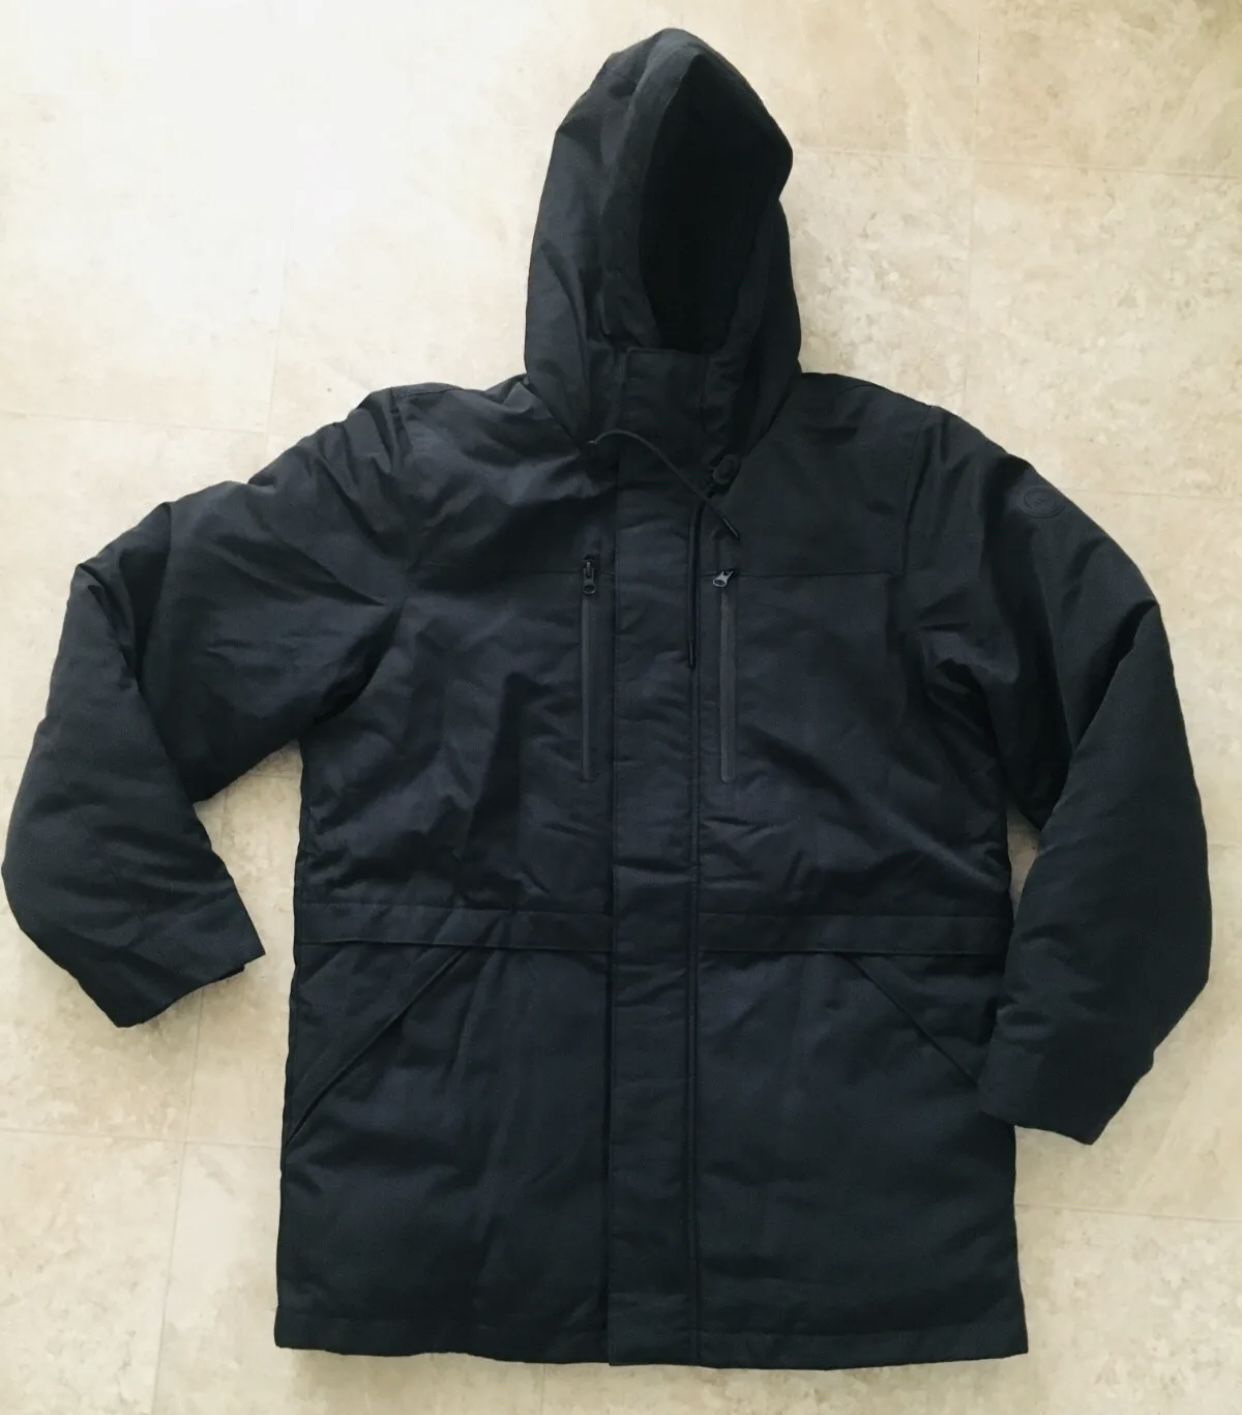 NWT-Abercrombie & Fitch Men's Size M Sherpa Lining Waterproof Winter Hood Jacket